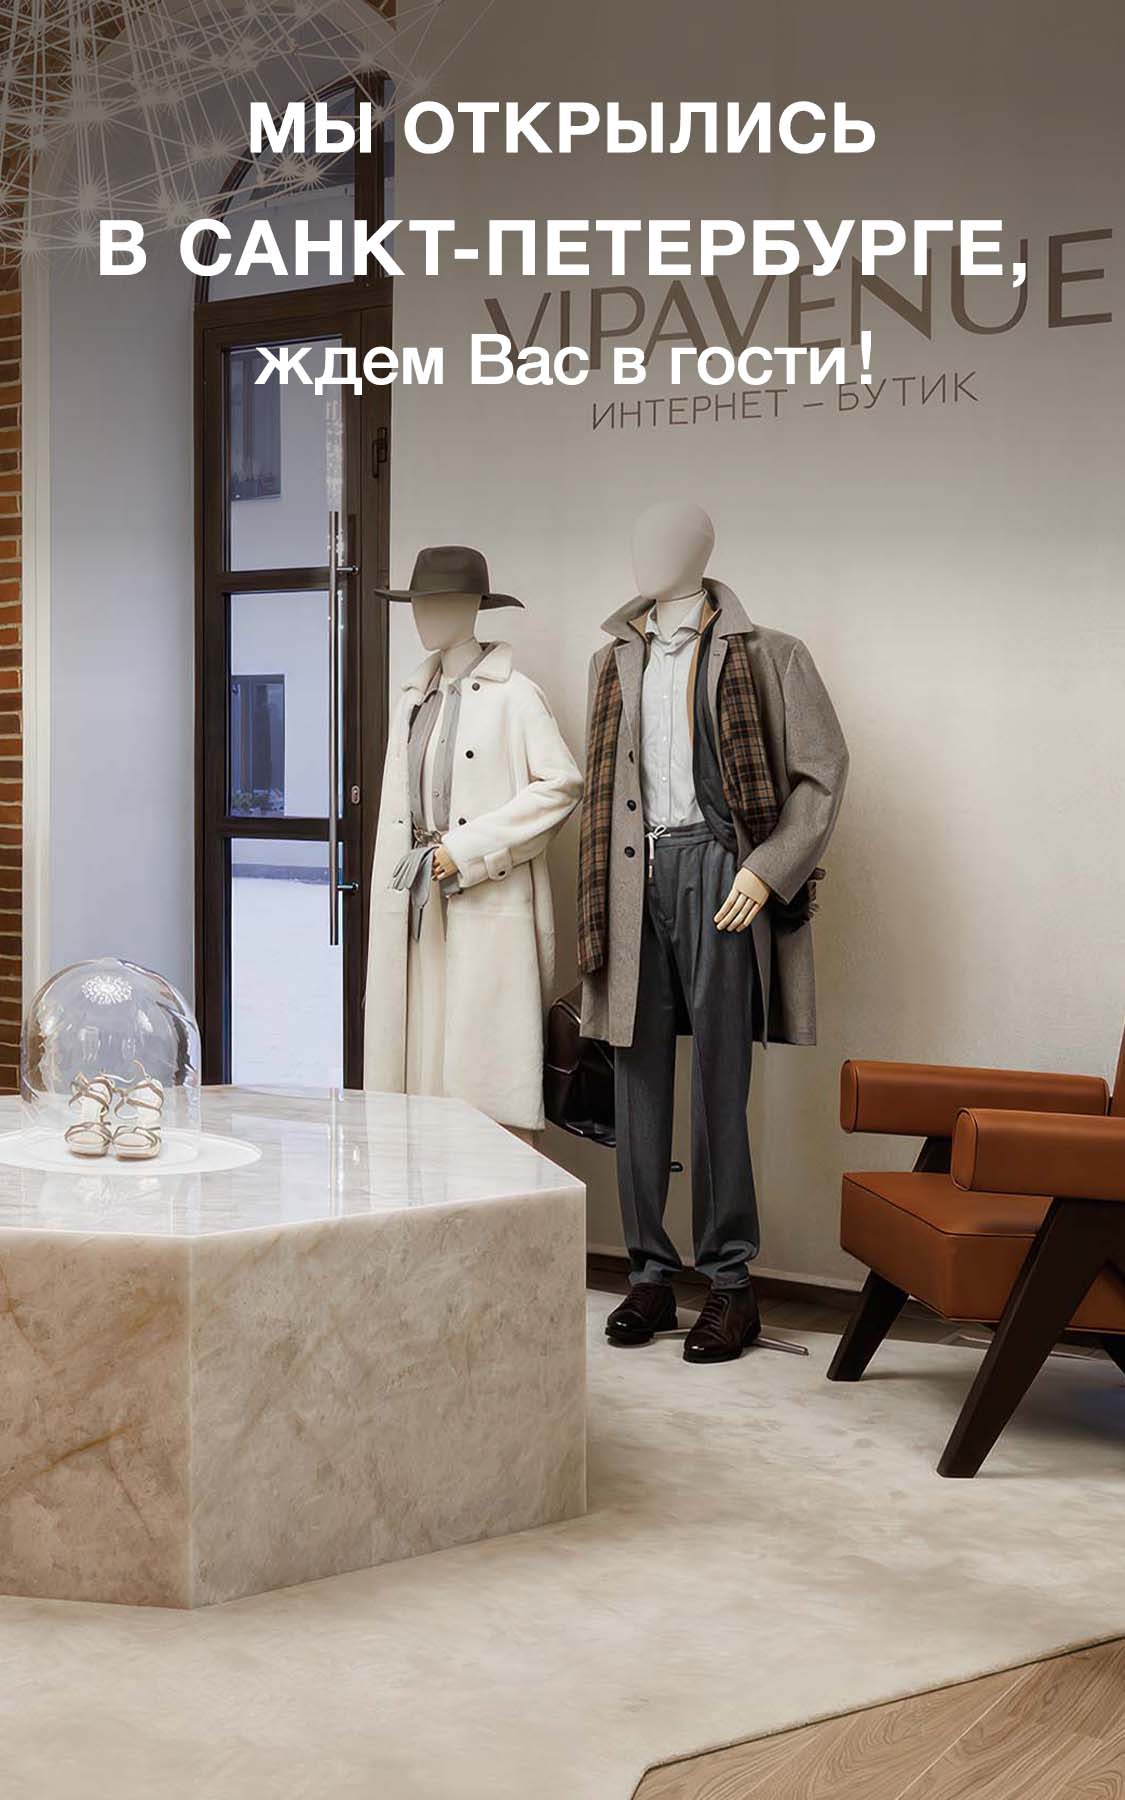 taimyr-expo.ru - интернет-магазин модной и недорогой одежды в Беларуси